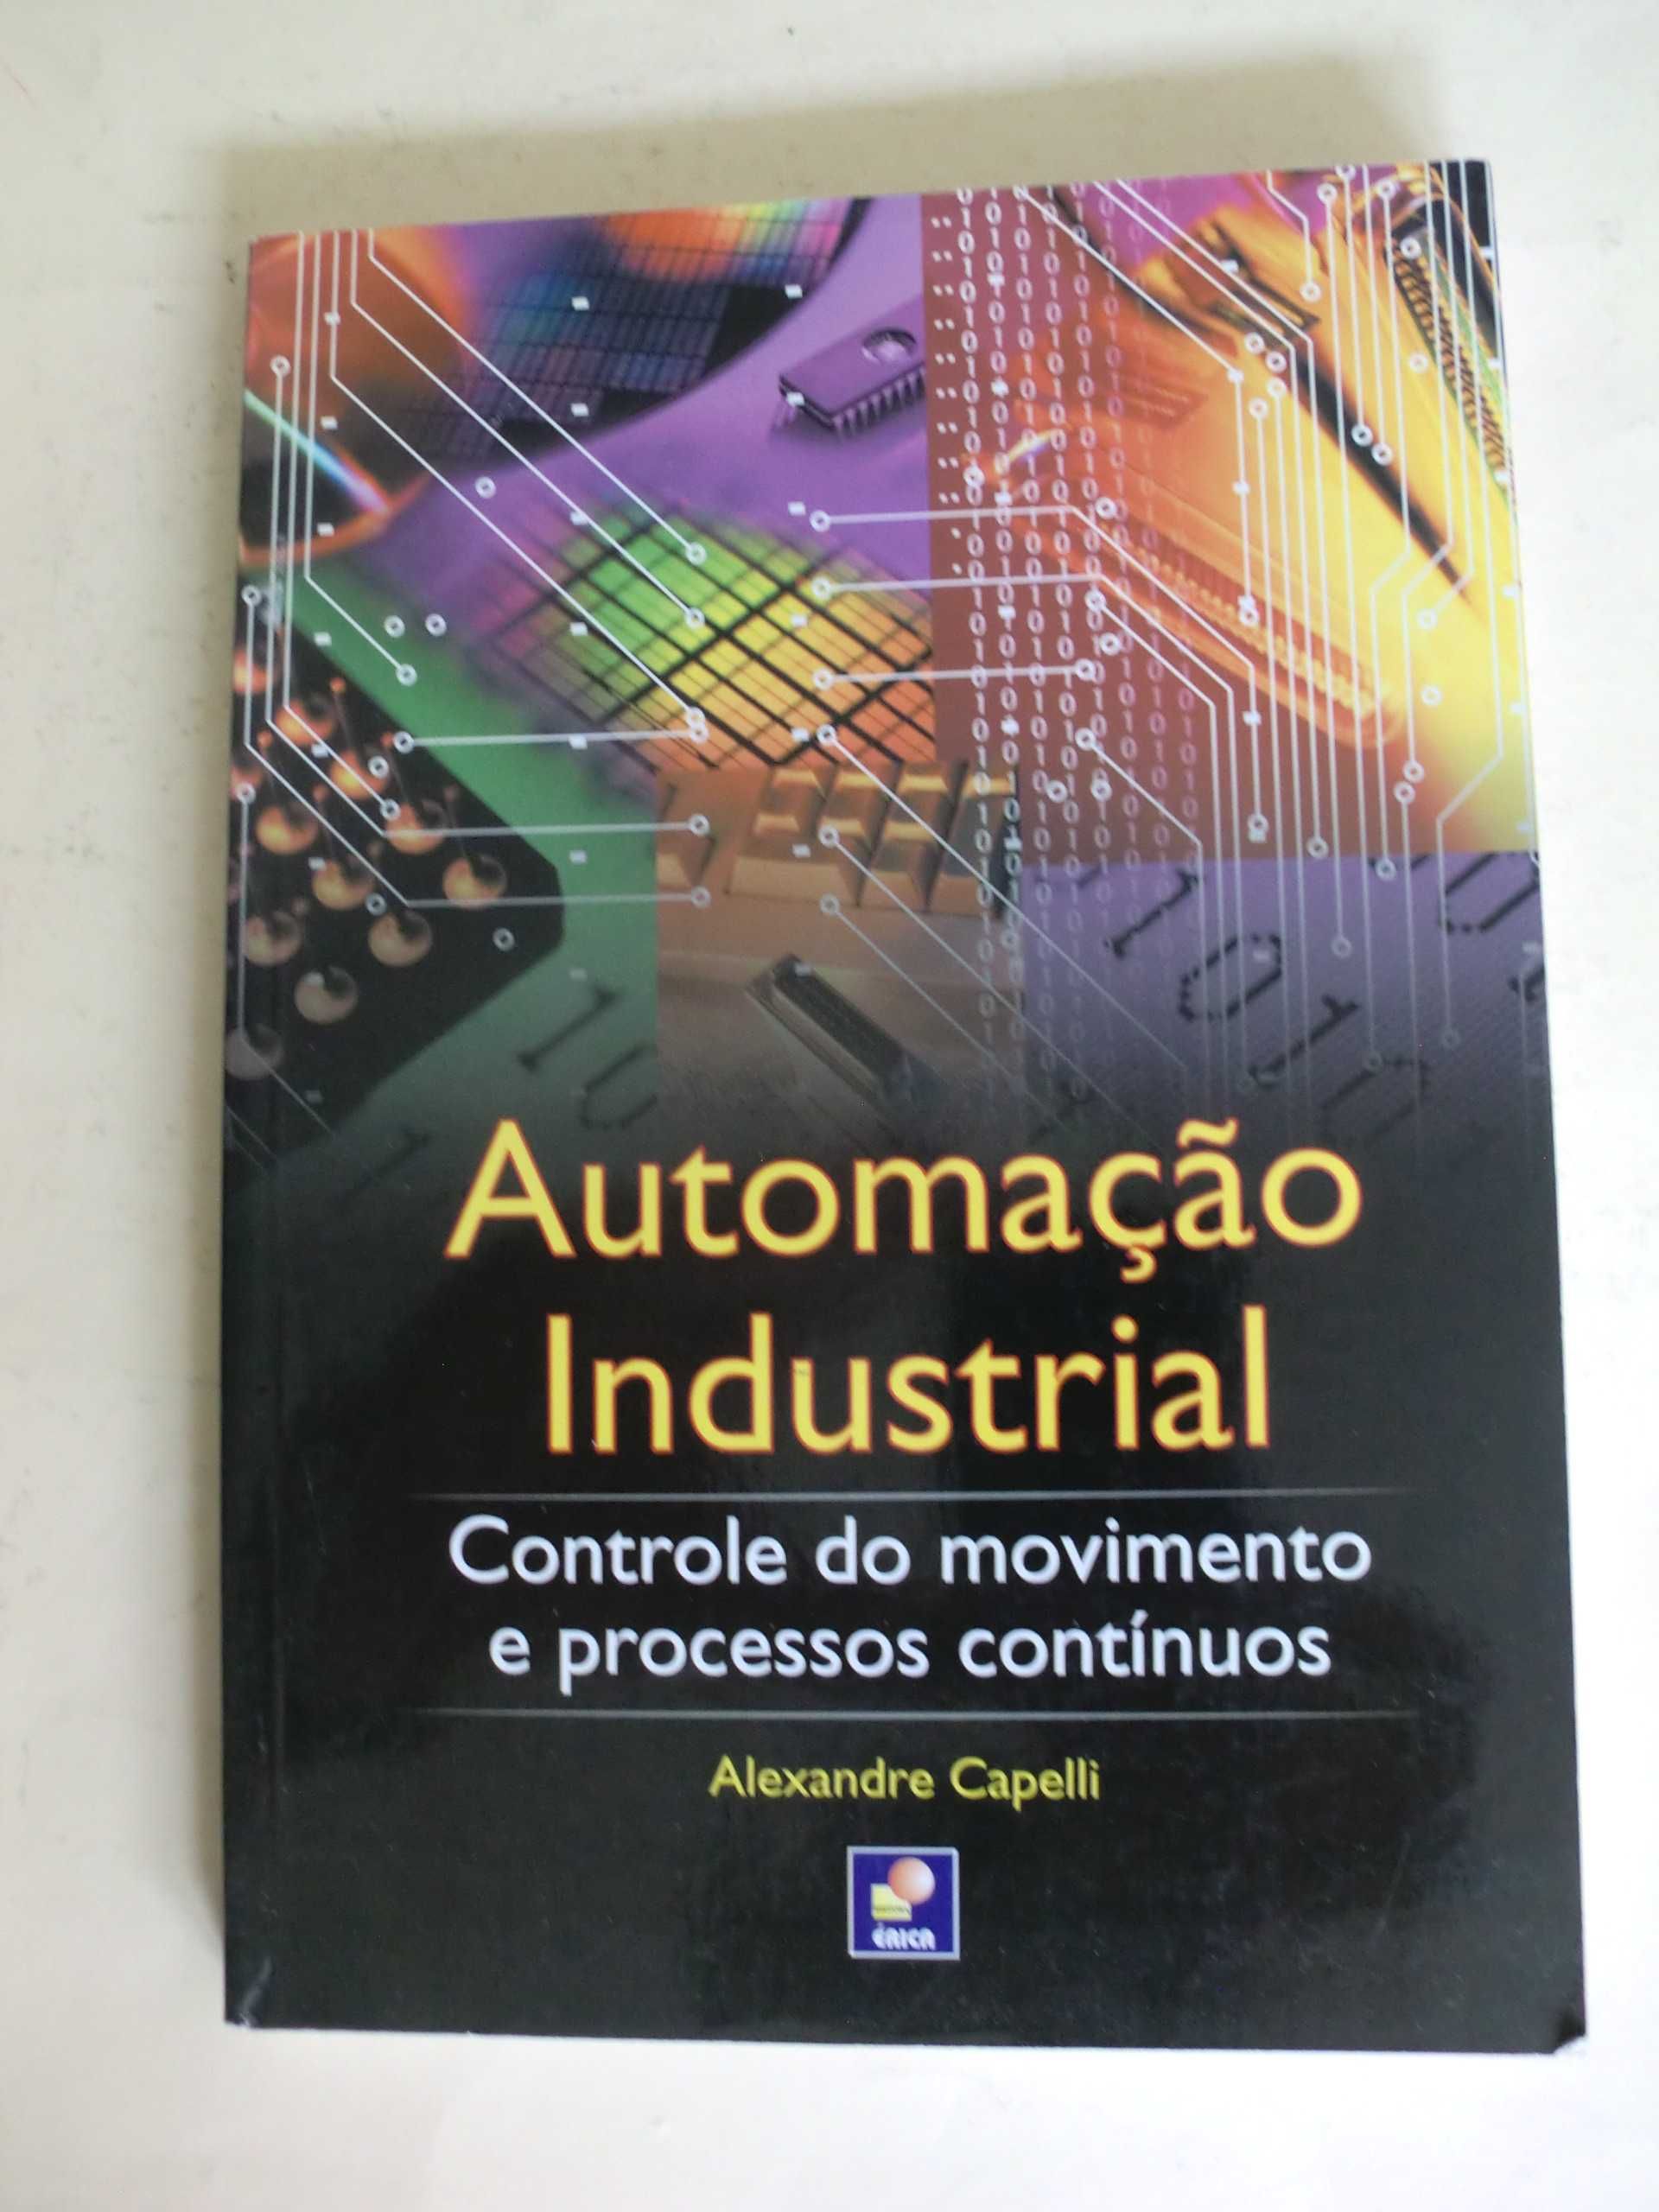 Automação Industrial
de Alexandre Capelli